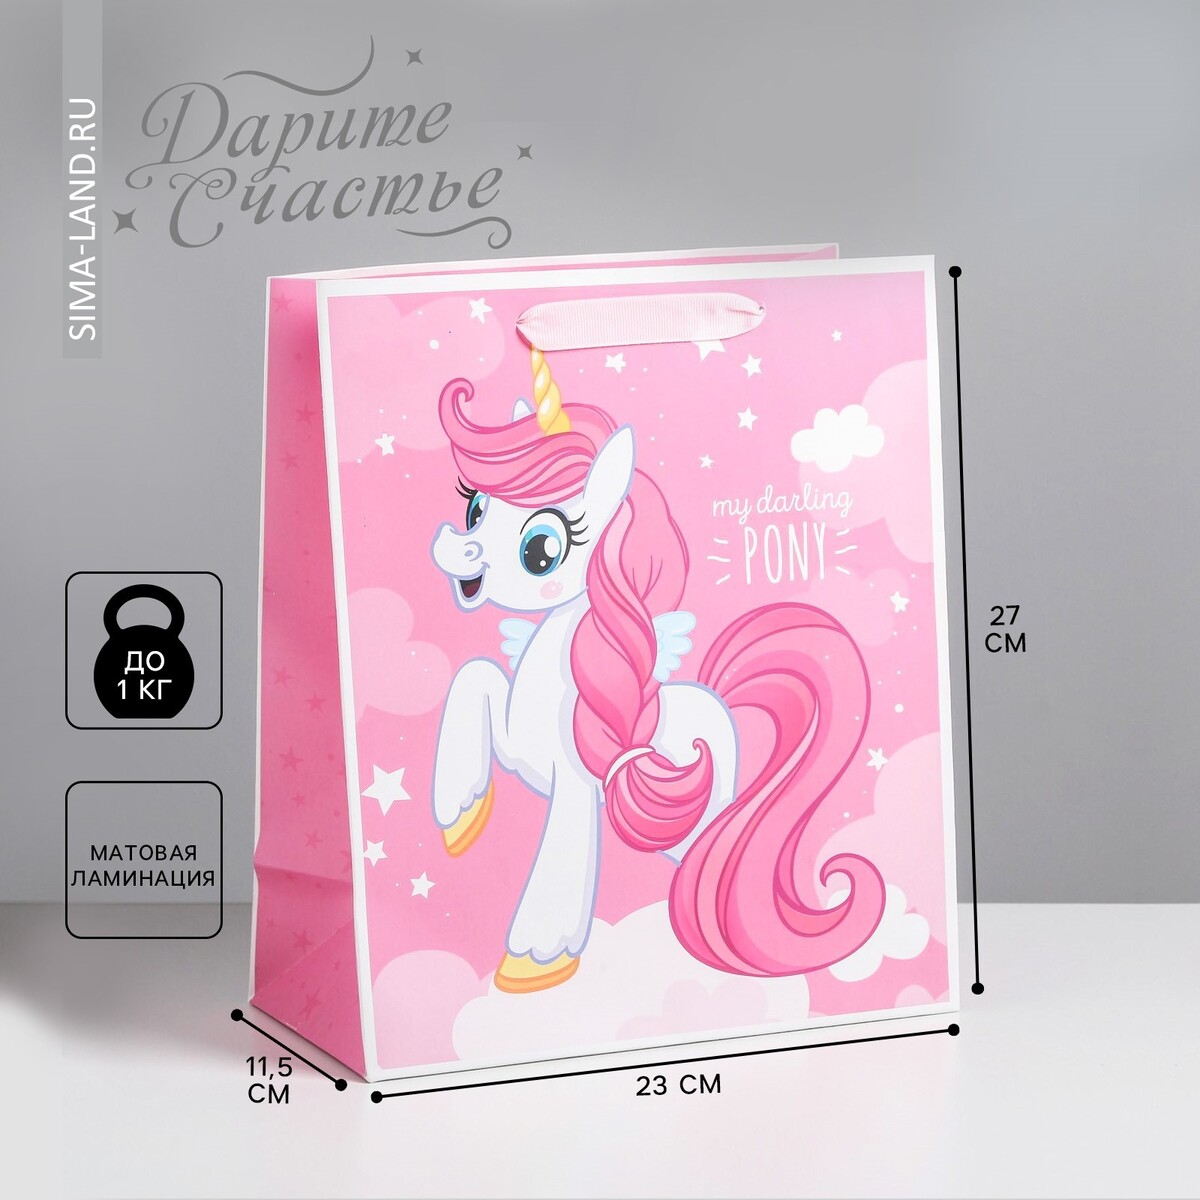 Пакет подарочный ламинированный вертикальный, упаковка, my darling pony, ml 23 х 27 х 11,5 см пакет ламинированный вертикальный my darling pony ms 18 × 23 × 10 см